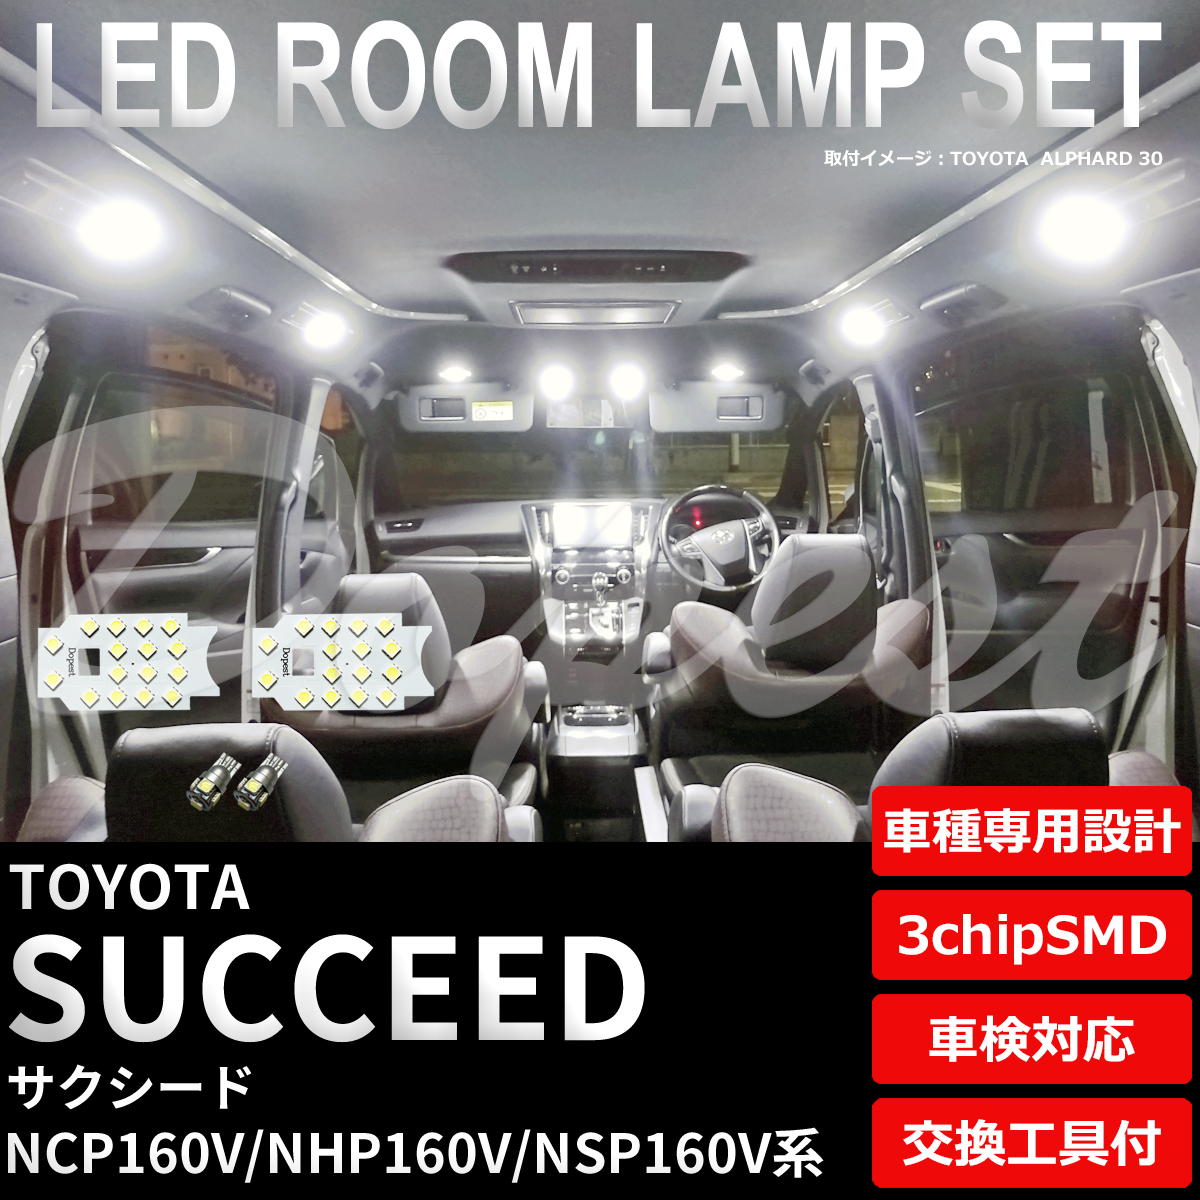 サクシード LEDルームランプセット NCP/NHP/NSP160V系 車内